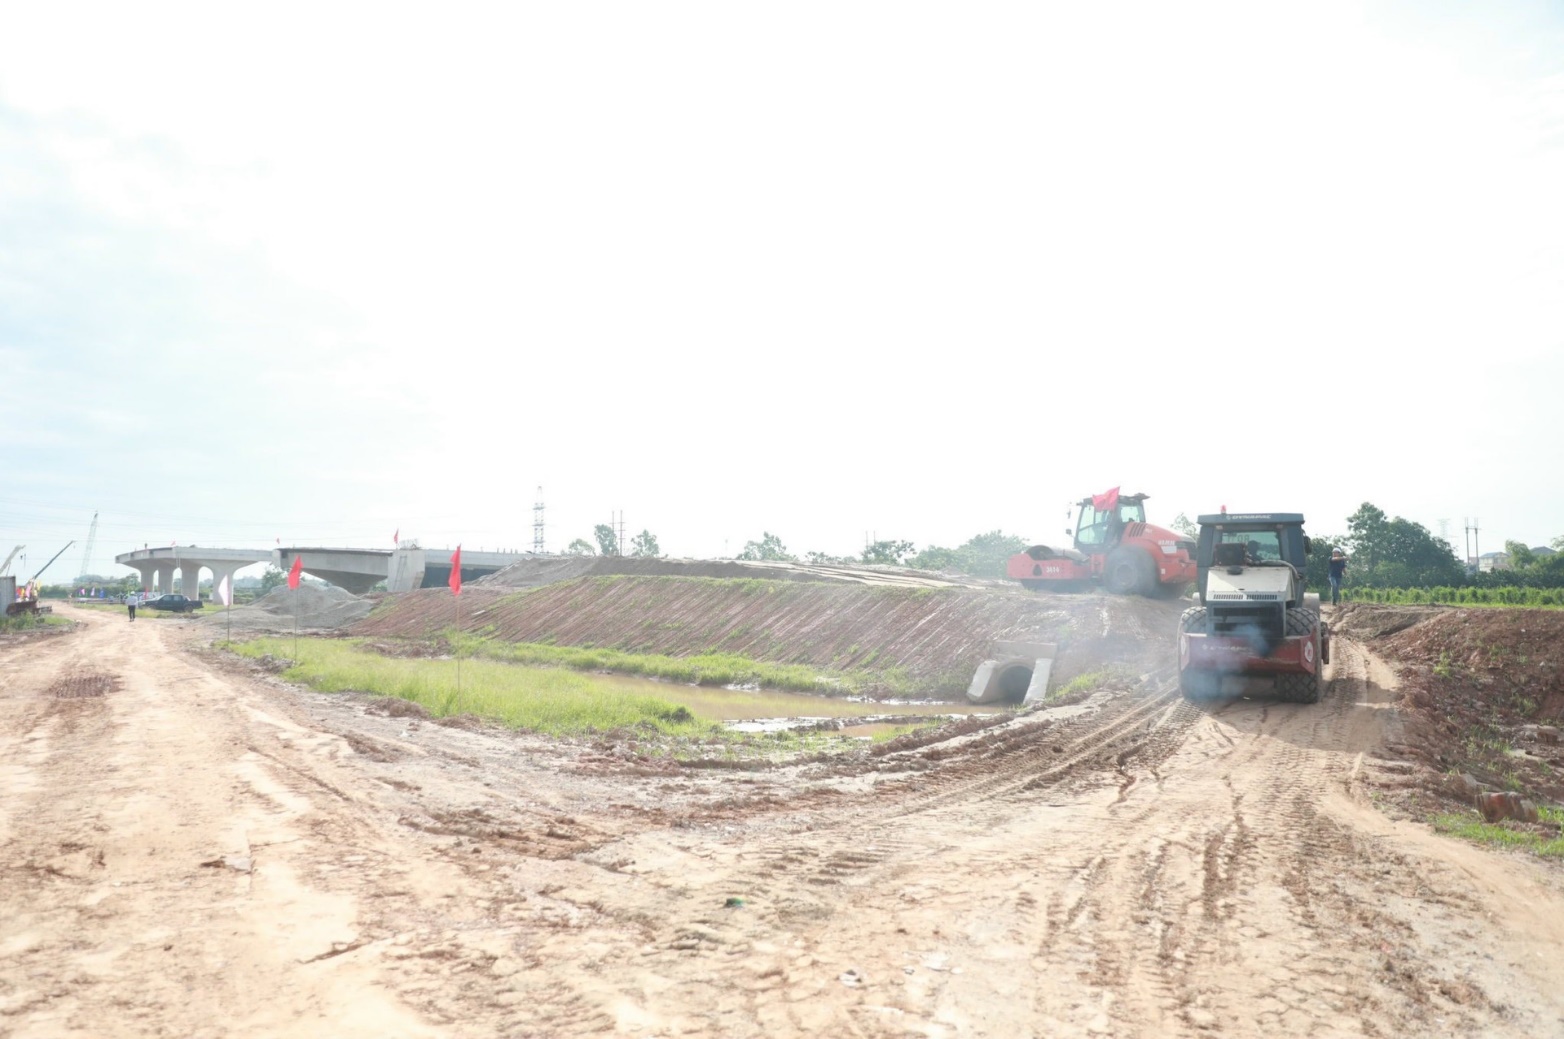 Đồng chí Bí thư Thành ủy Hà Nội Đinh Tiến Dũng kiểm tra thực địa dự án đường Vành đai 4 - Vùng Thủ đô tại huyện Mê Linh- Ảnh 3.